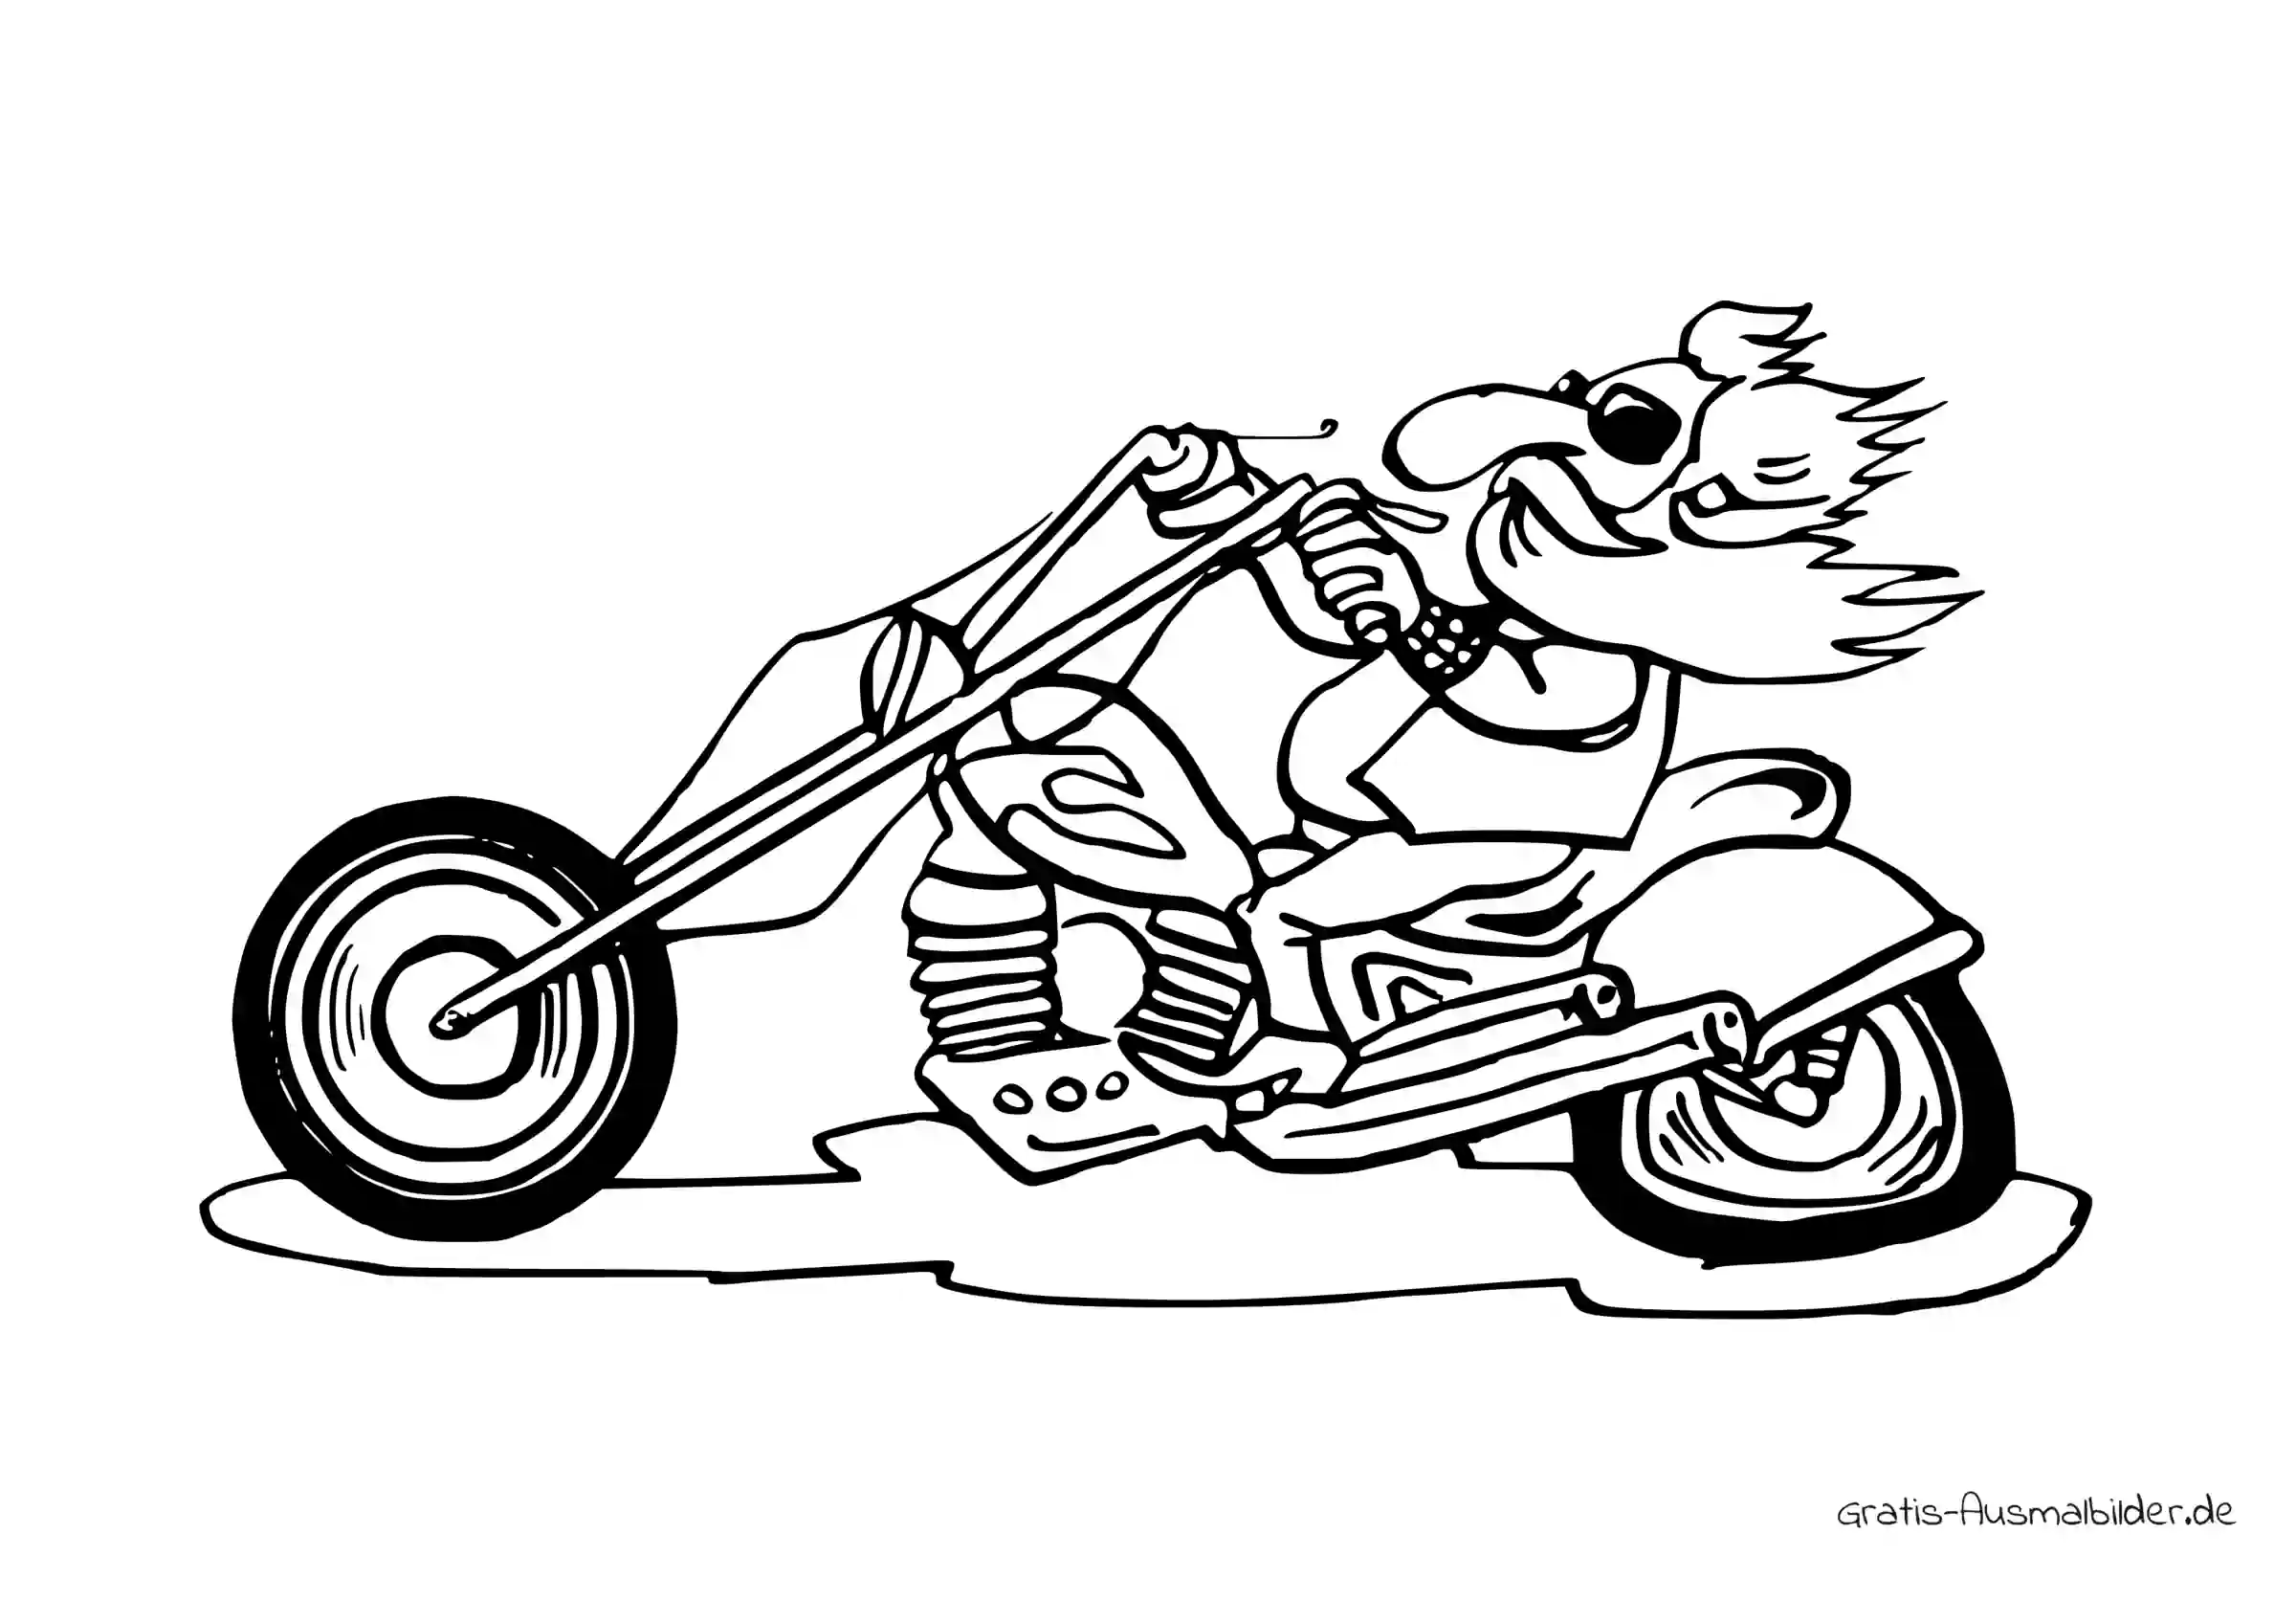 Ausmalbild Harleyfahrer